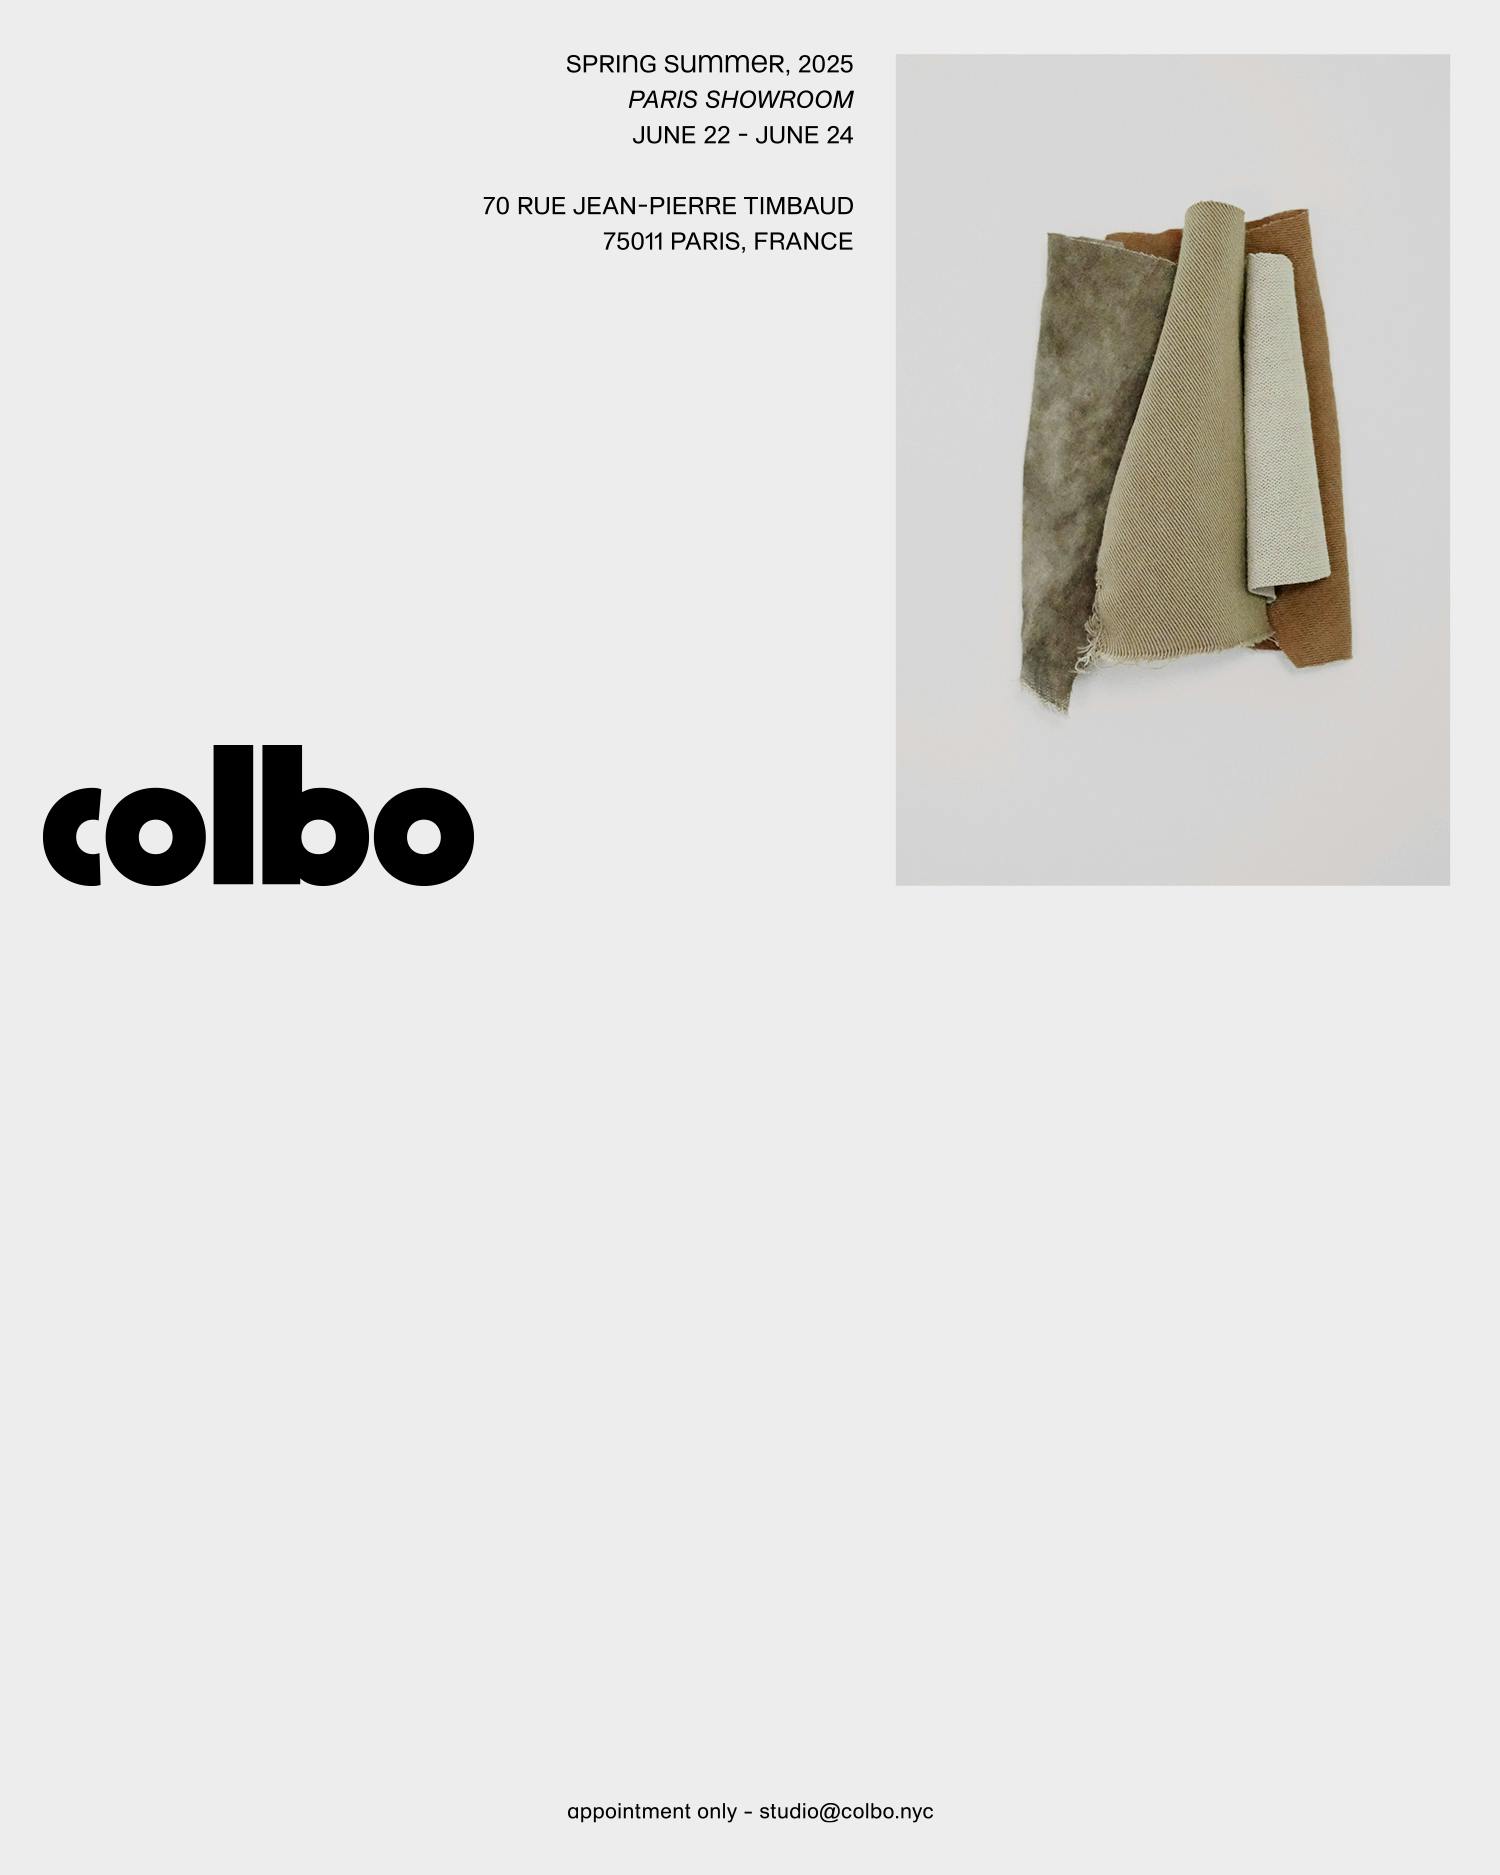 Colbo - Invitation Paris Showroom